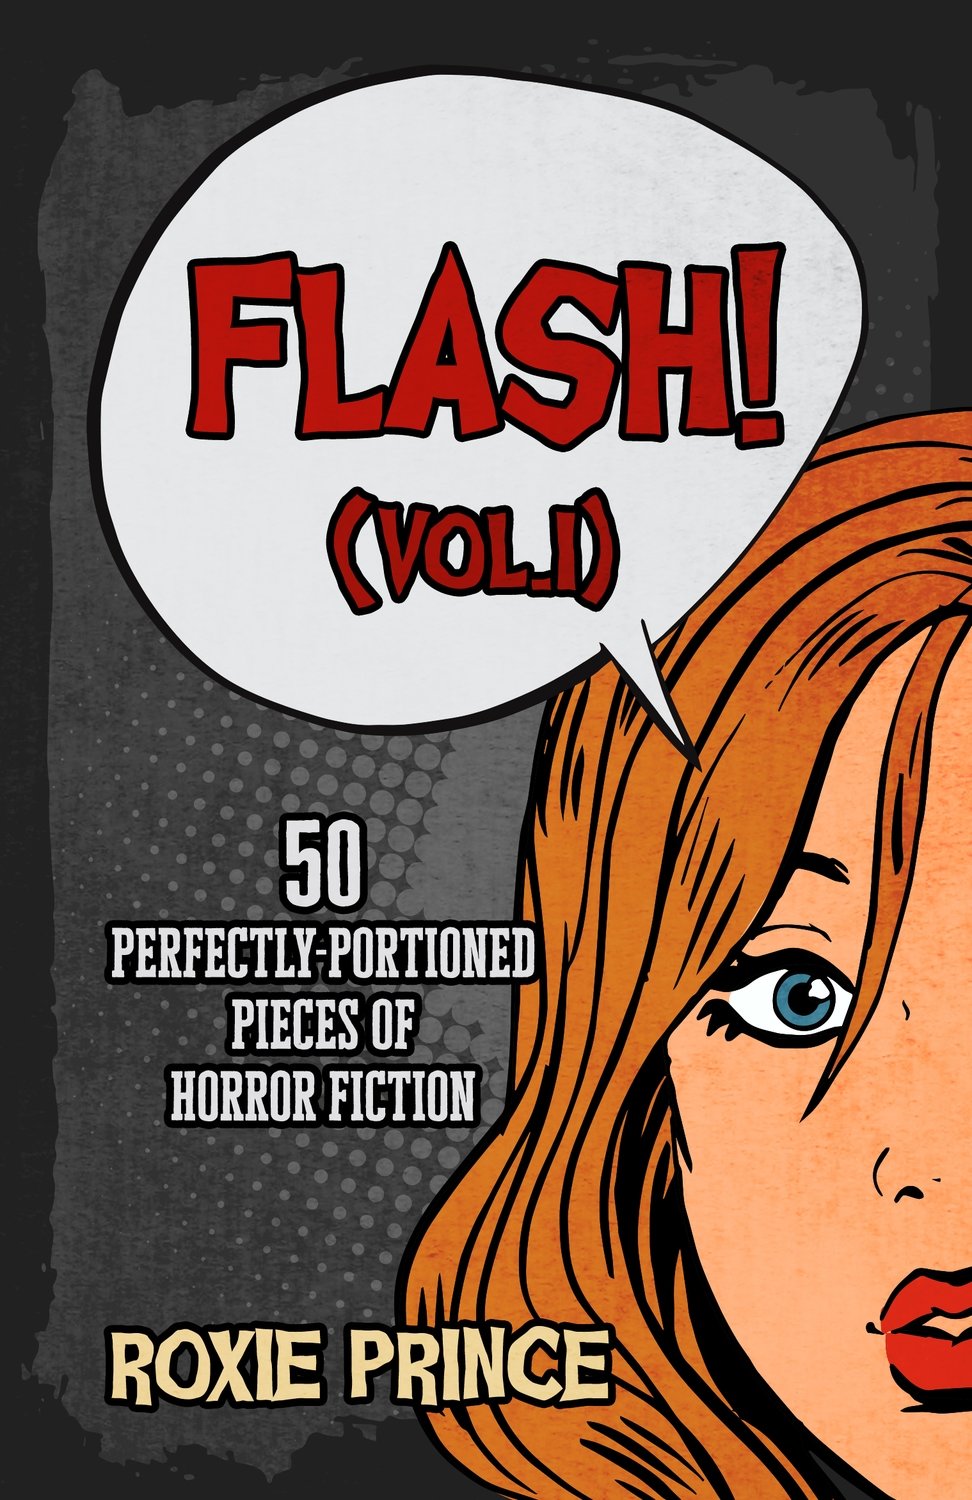 FLASH! (Vol. I) | SIGNED COPY